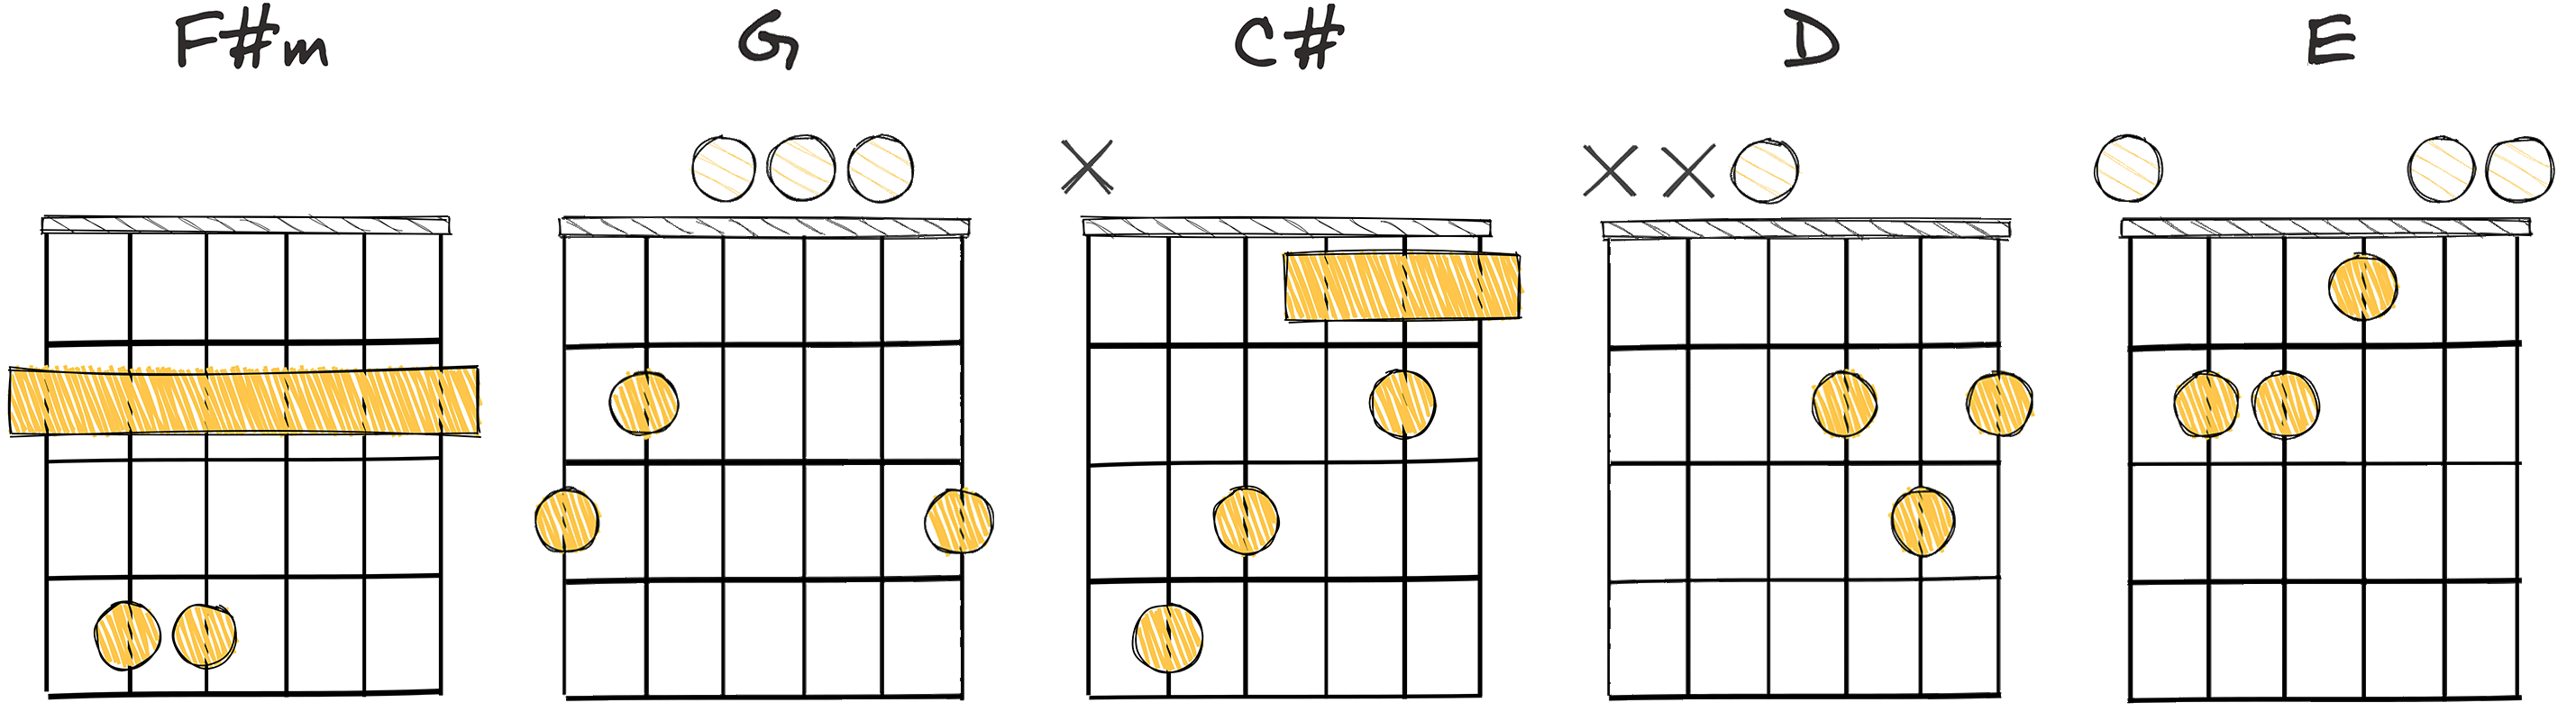 iii-IV-VII-I-II (3-4-7-1-2) chords diagram